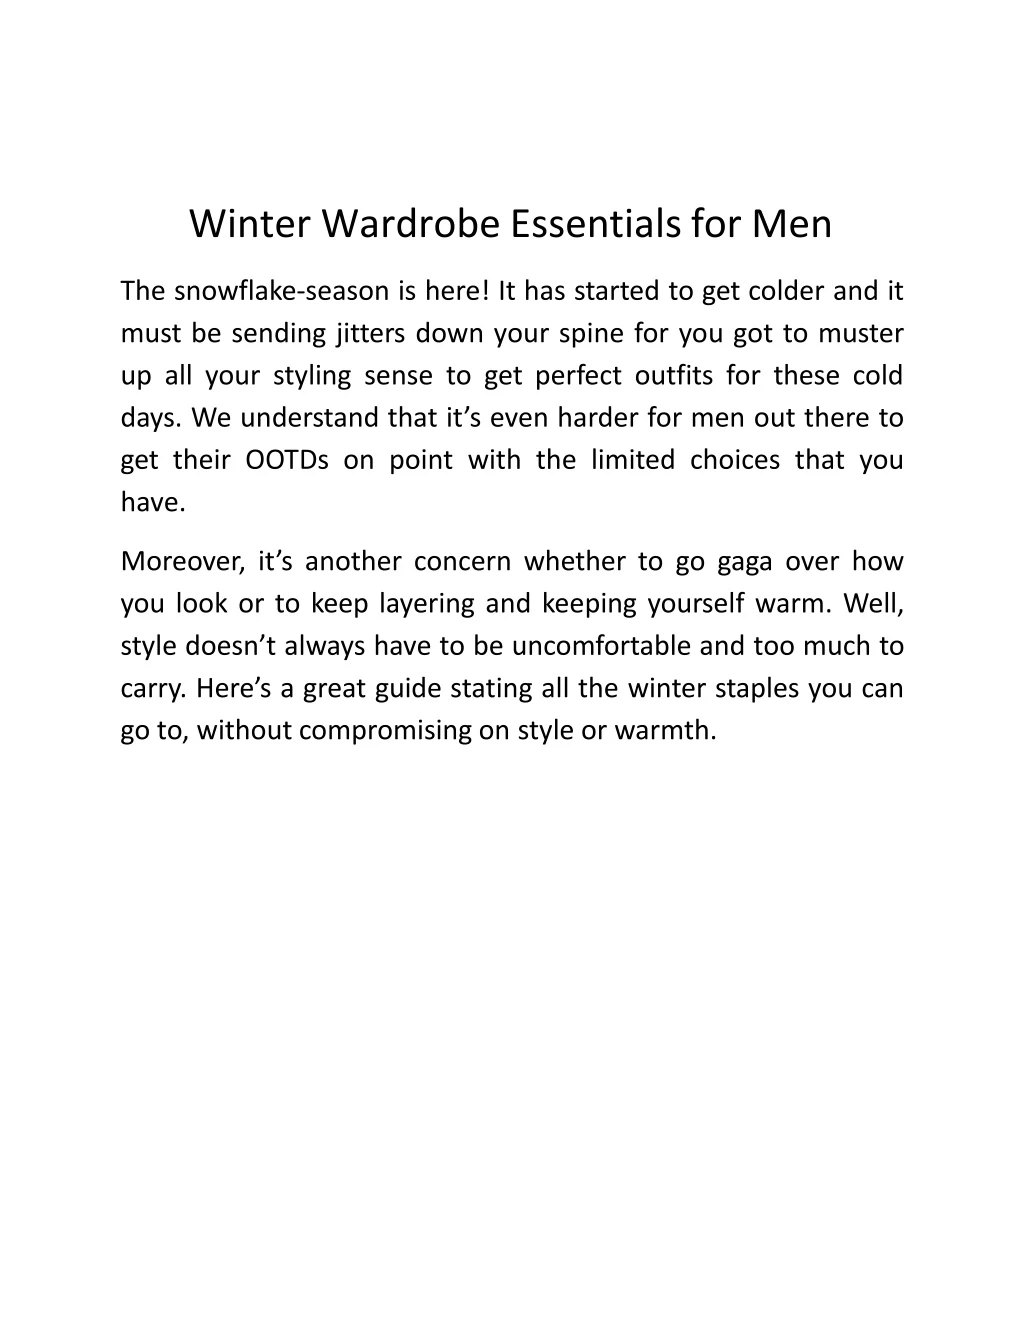 winter wardrobe essentials for men